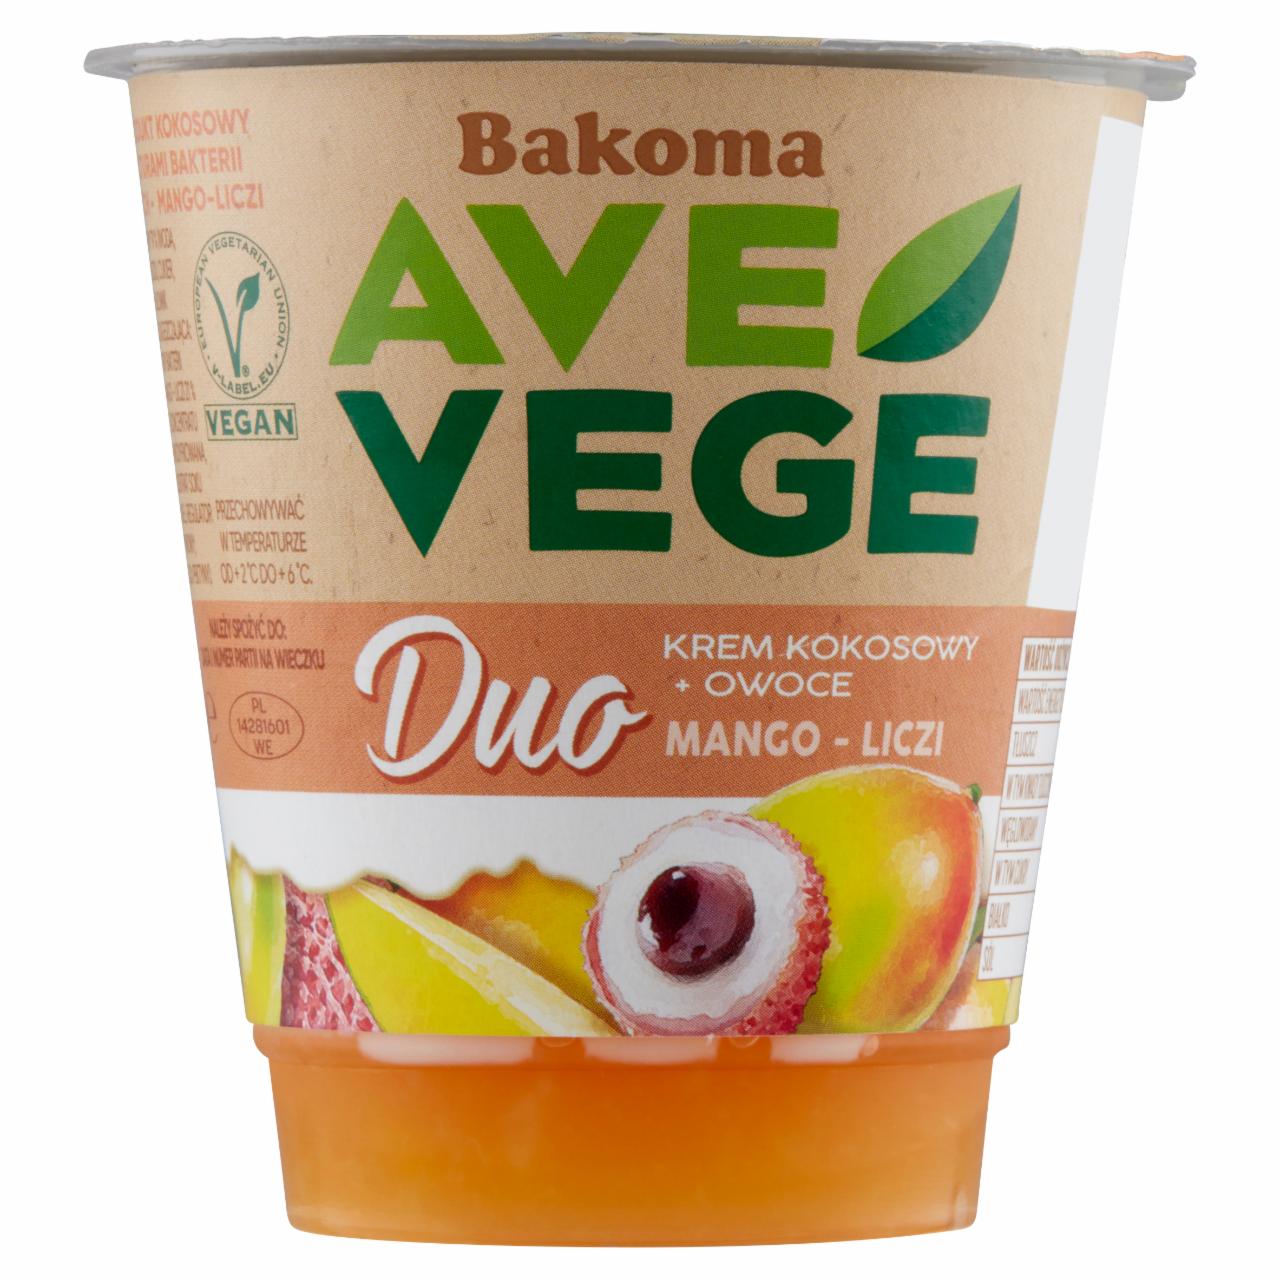 Zdjęcia - Bakoma Ave Vege Duo Krem kokosowy + owoce mango-liczi 140 g